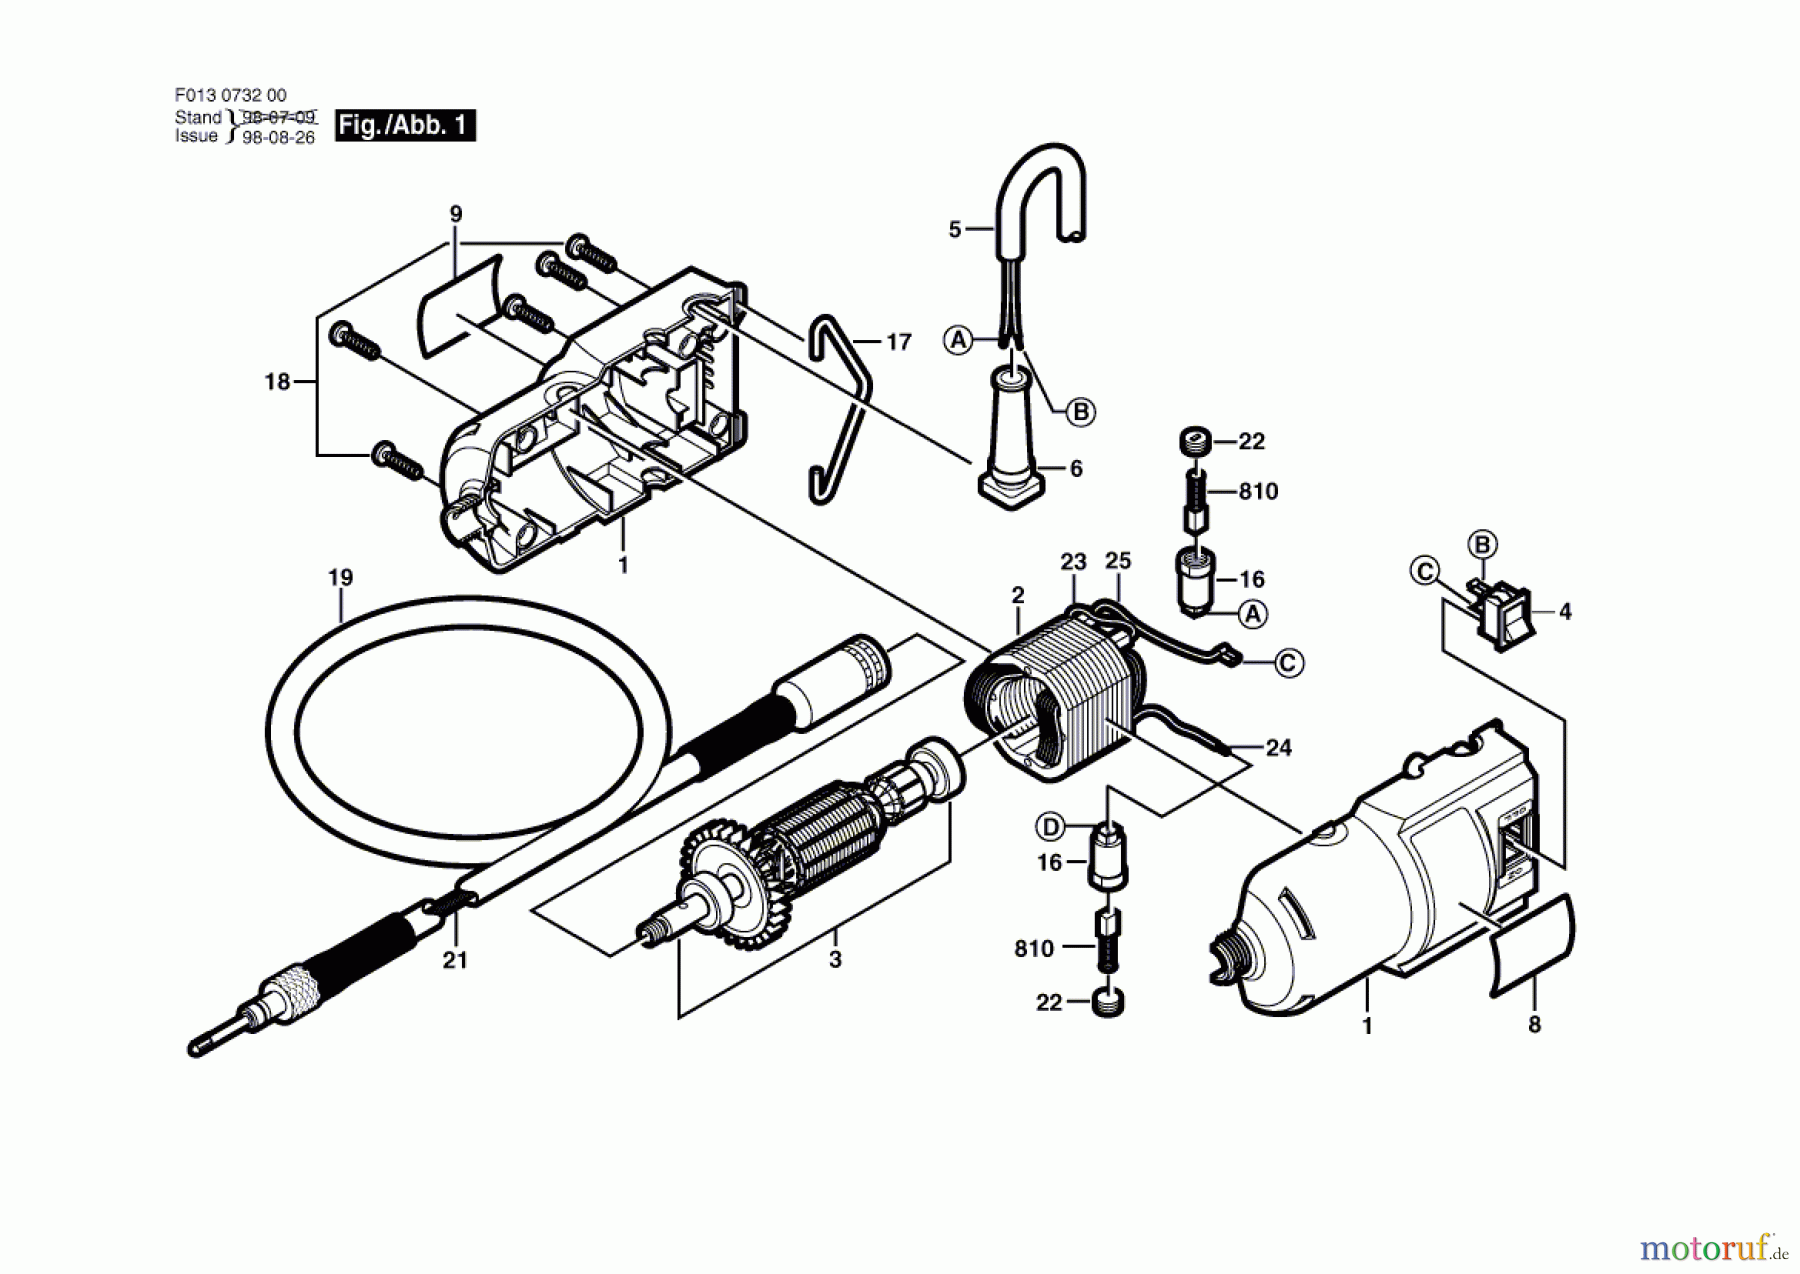  Bosch Werkzeug Drehwerkzeug 7326 Seite 1